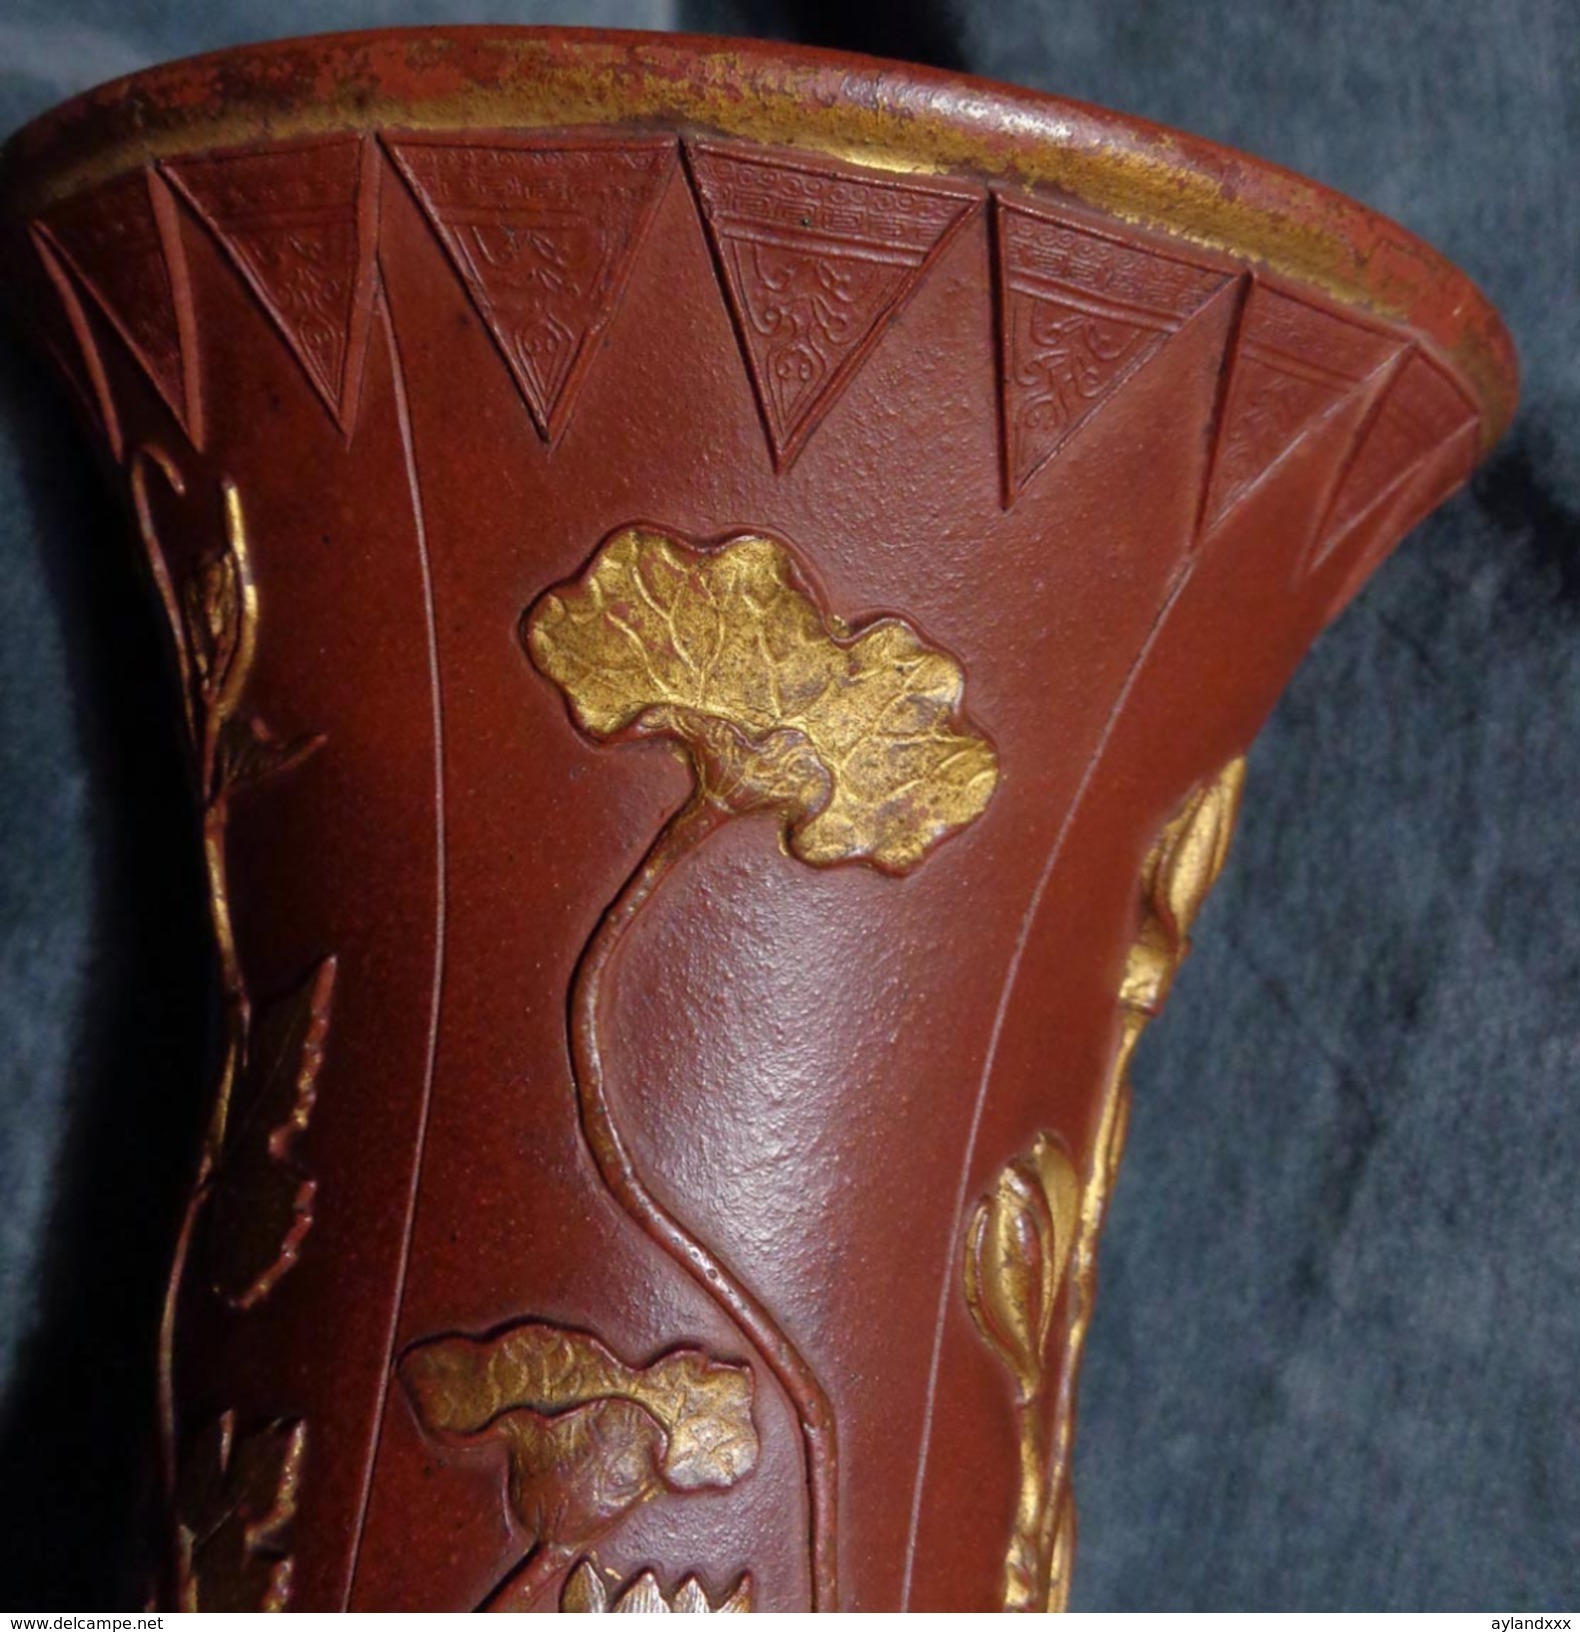 CINA (China): Rare Chinese Yixing vase, Kangxi period